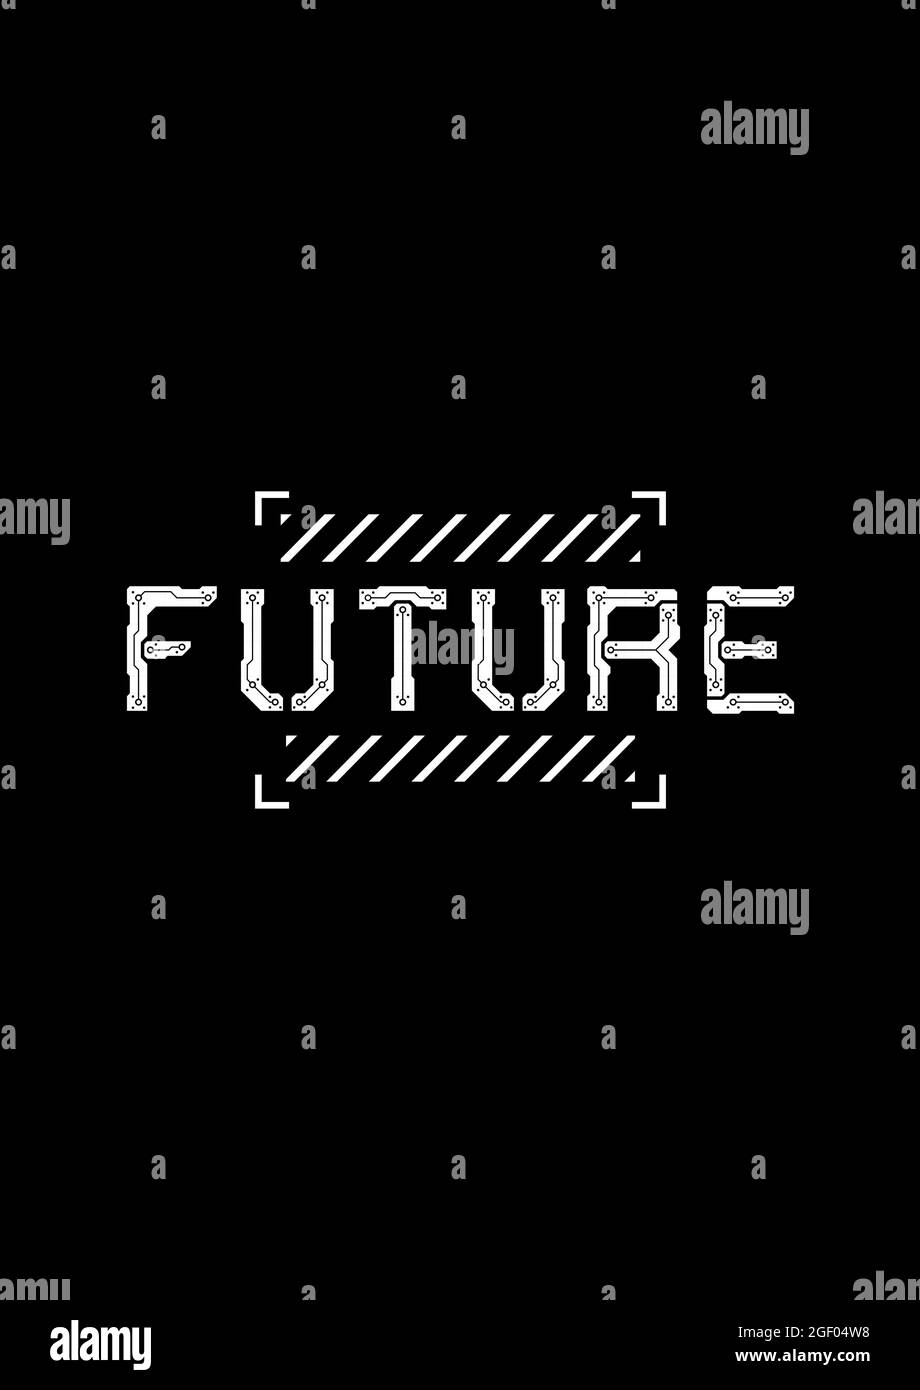 T-shirt e design di abbigliamento con un grande futuro di titoli, ed elementi di design cyberpunk nella cornice futuristica quadrata. Stampa in bianco e nero. Vettore Illustrazione Vettoriale